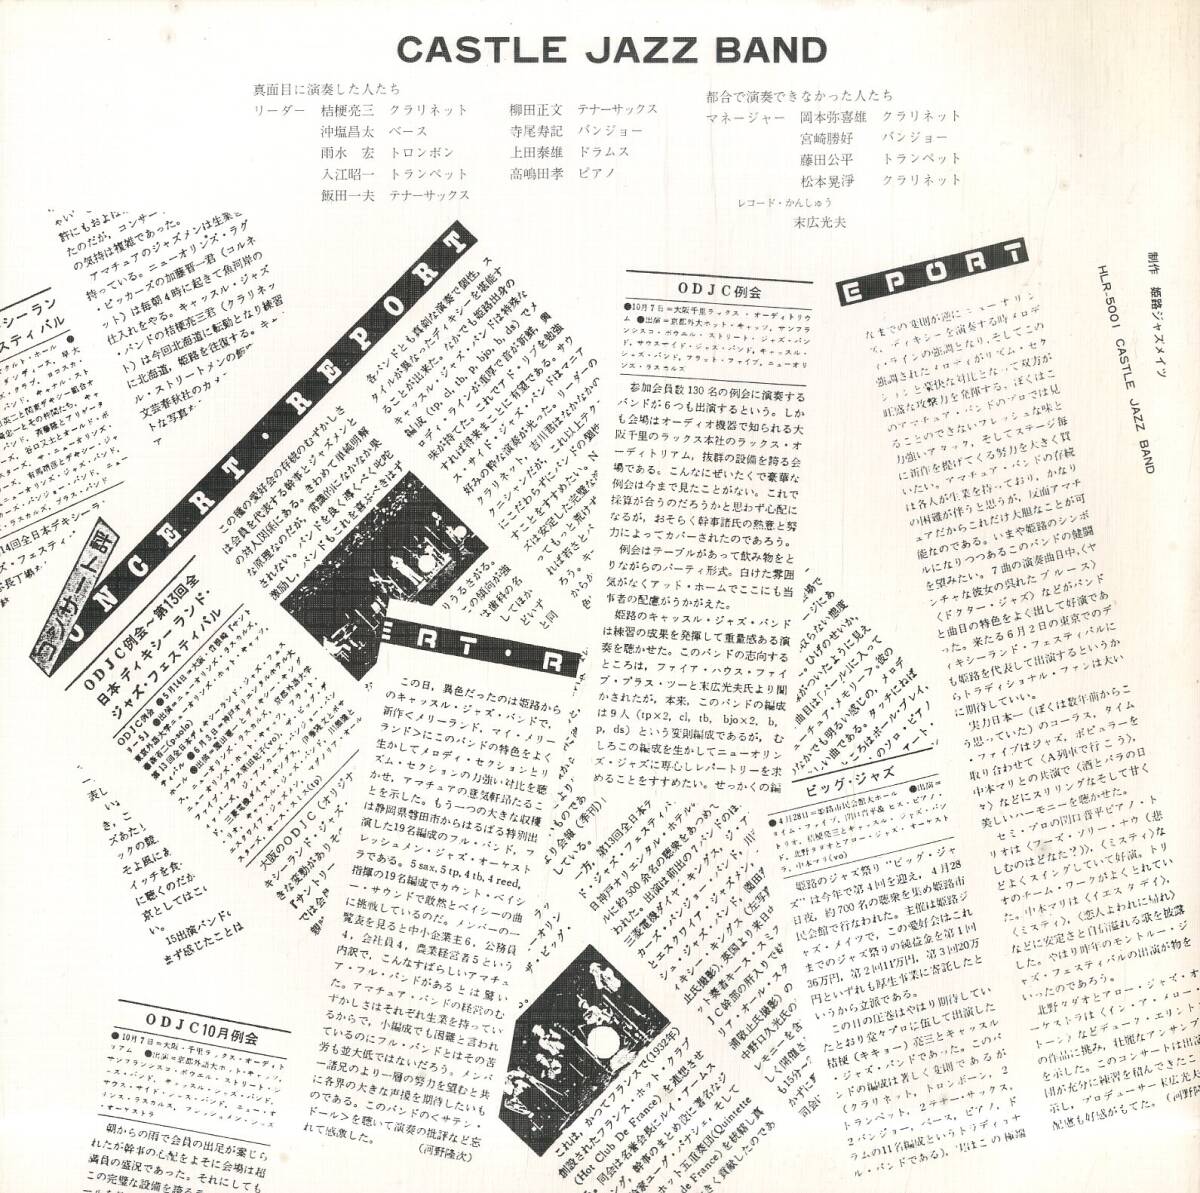 A00574944/LP/キャッスル・ジャズ・バンド(桔梗亮三)「Castle Jazz Band (1979年・HLR-5001・ディキシーランドJAZZ)」_画像2